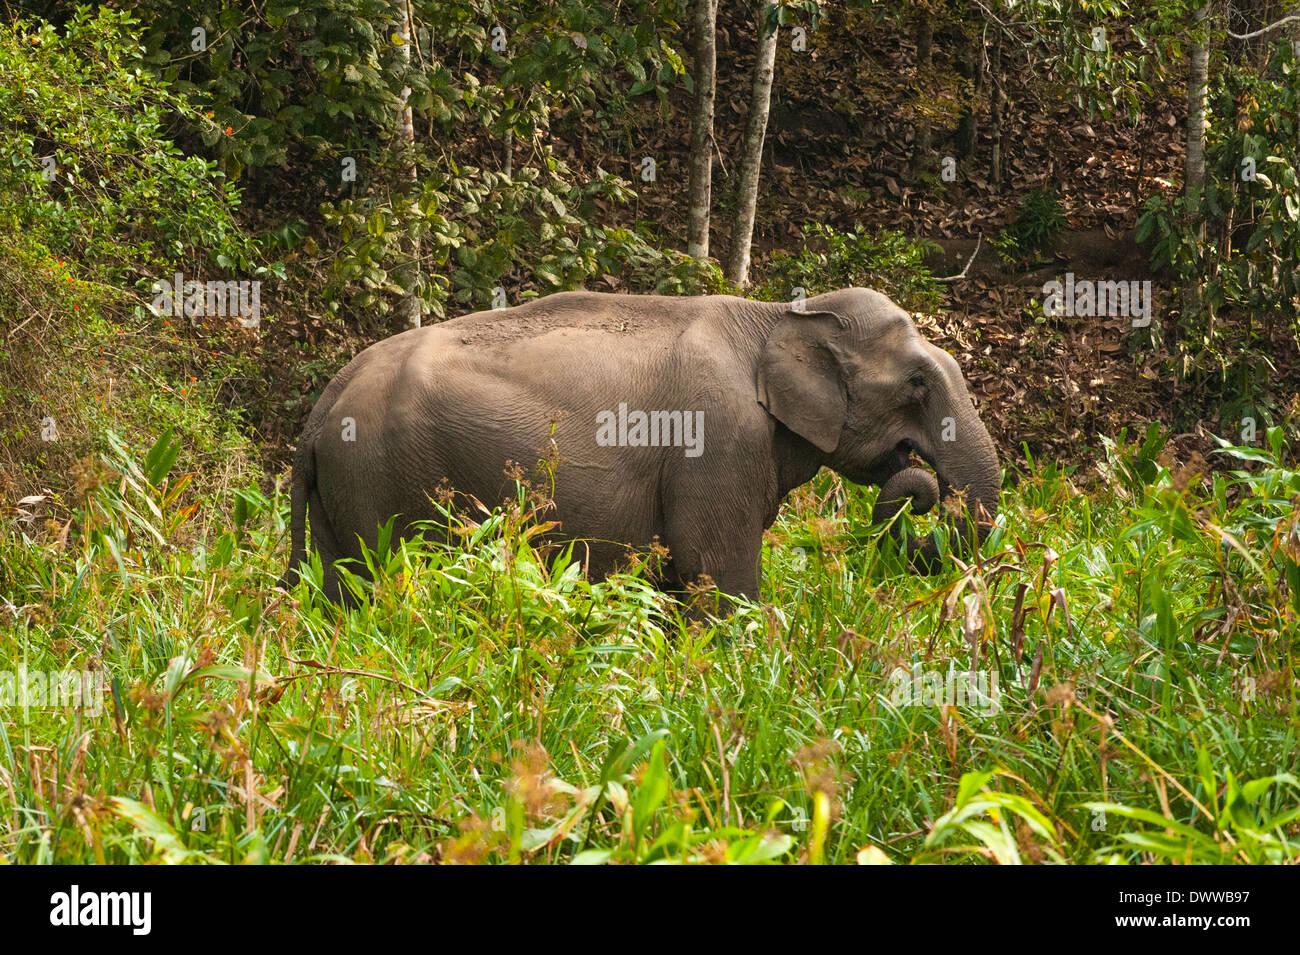 Sud Sud dell India Kerala Thekkady Parco Nazionale del Periyar paesaggio selvaggio della giungla elefante indiano il pascolo Elephas maximus indicus Foto Stock